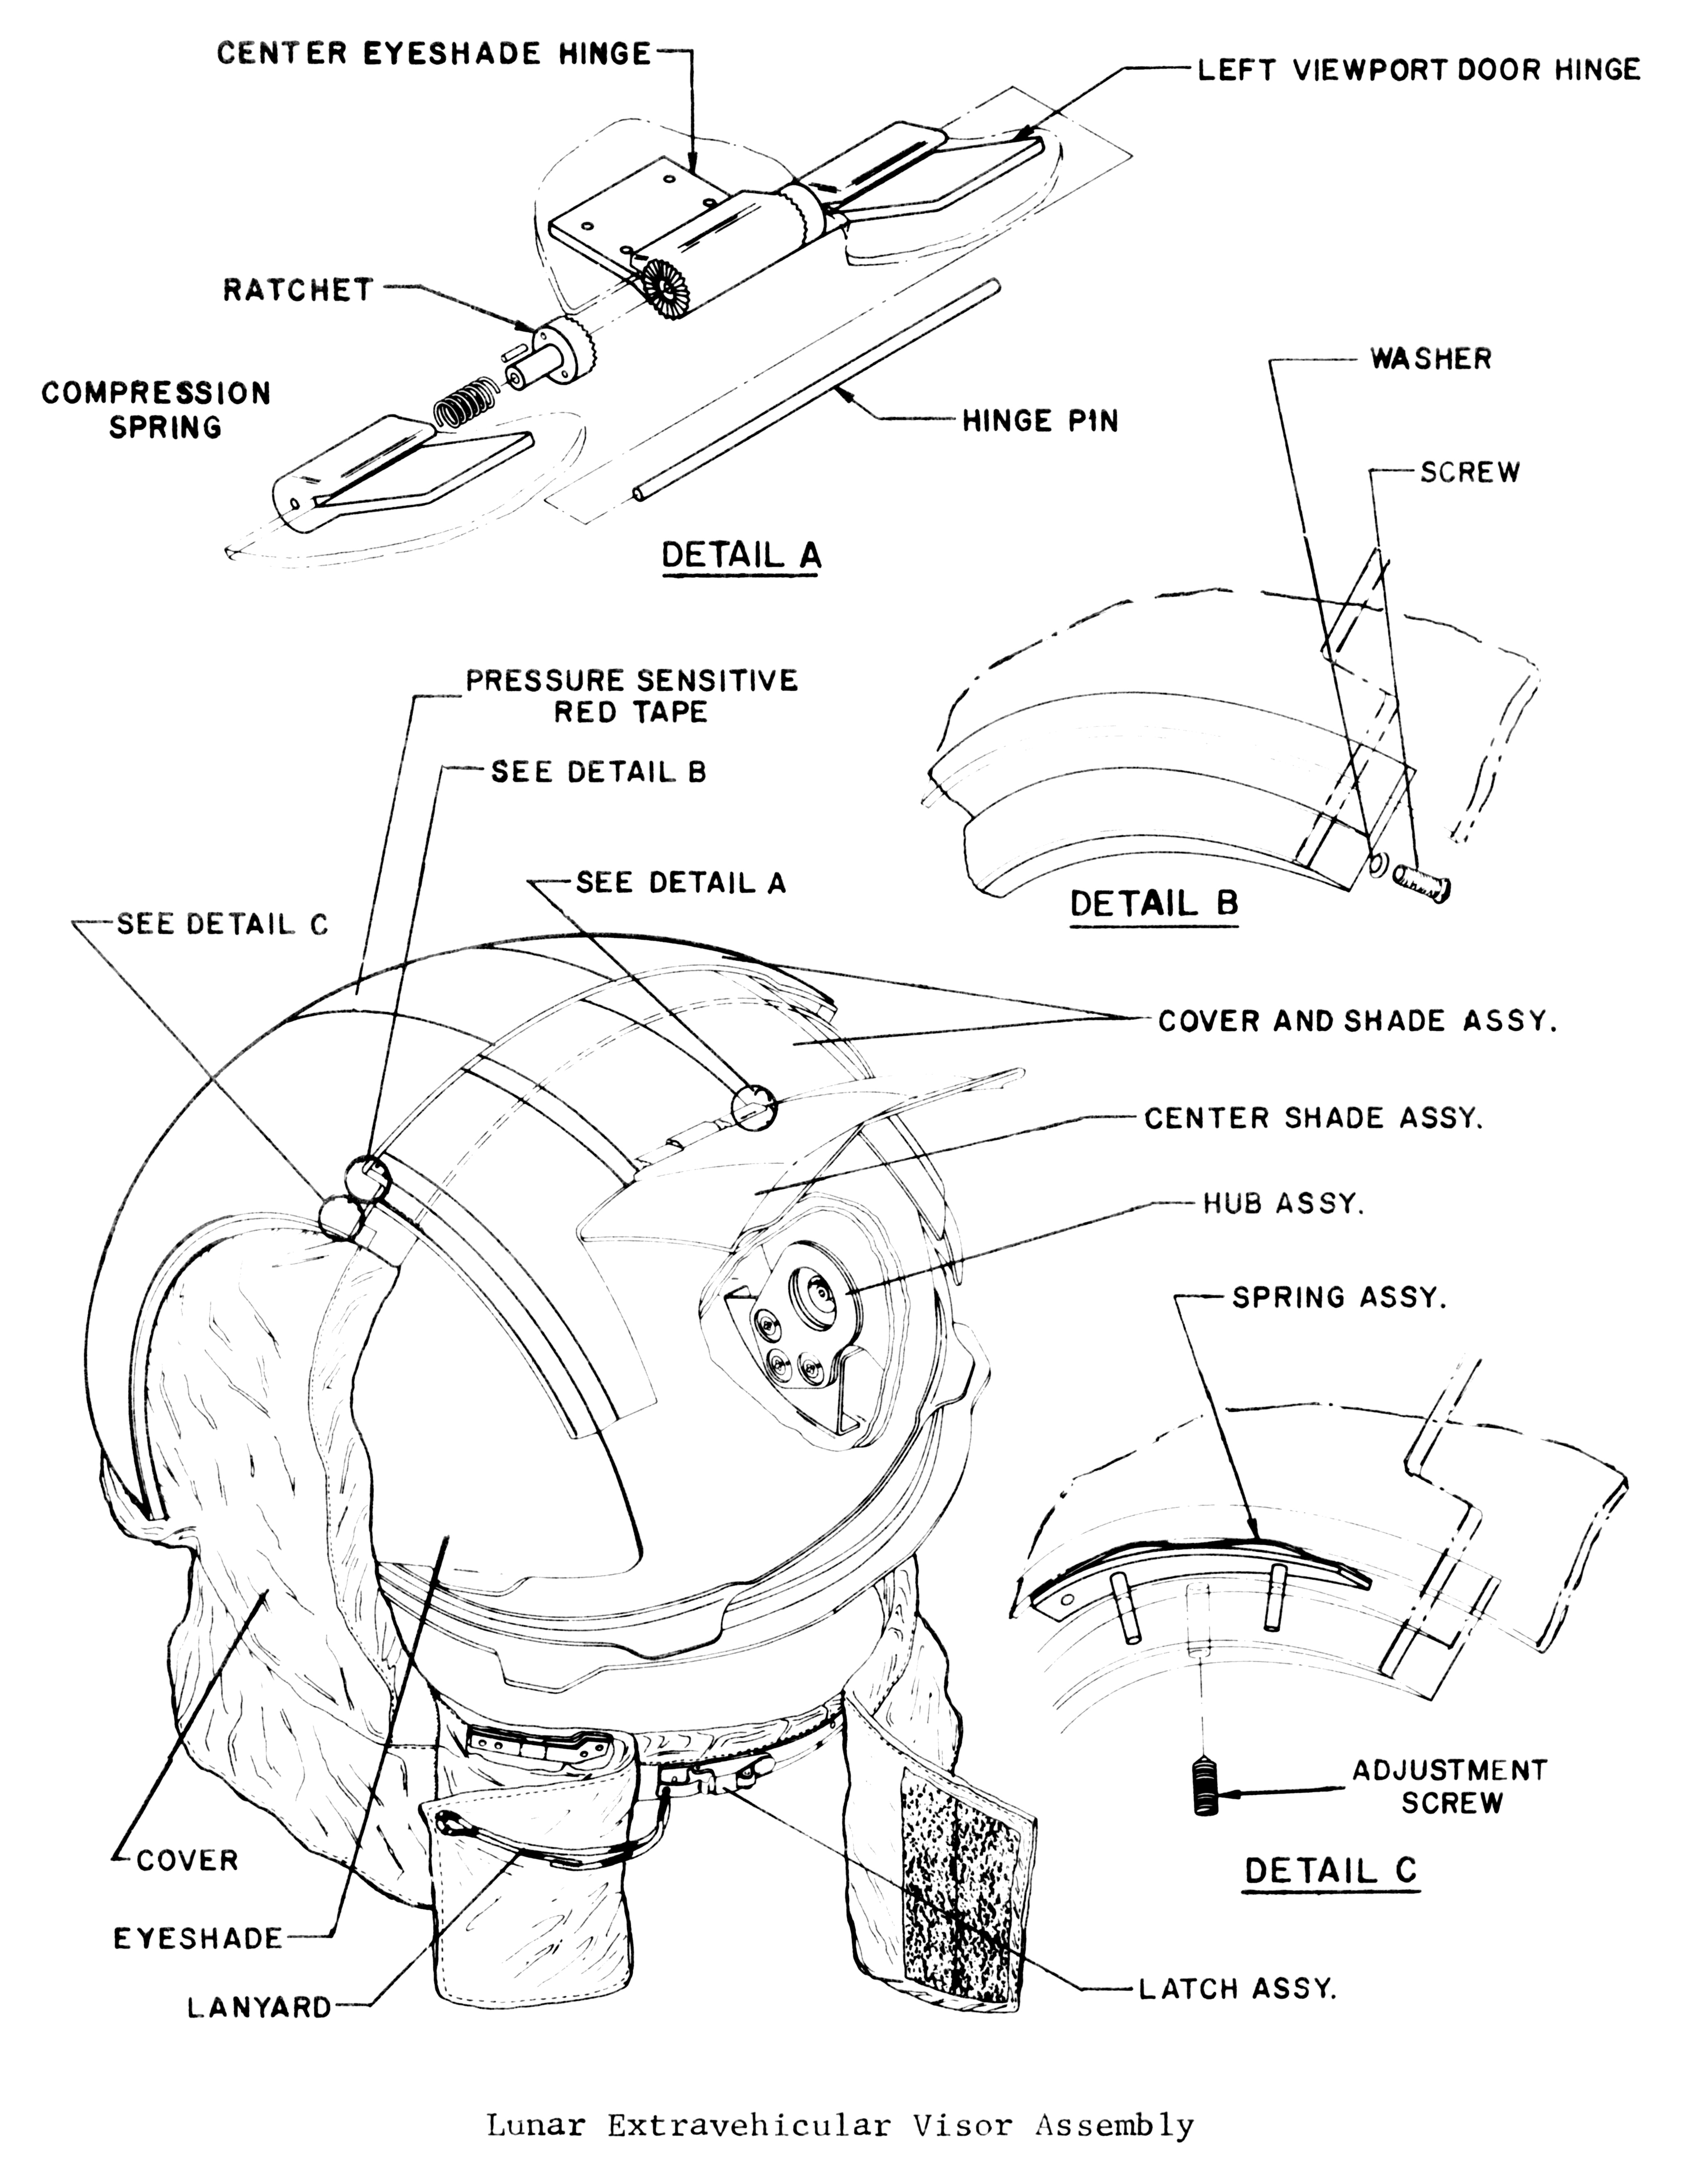 astronaut helmet diagrams